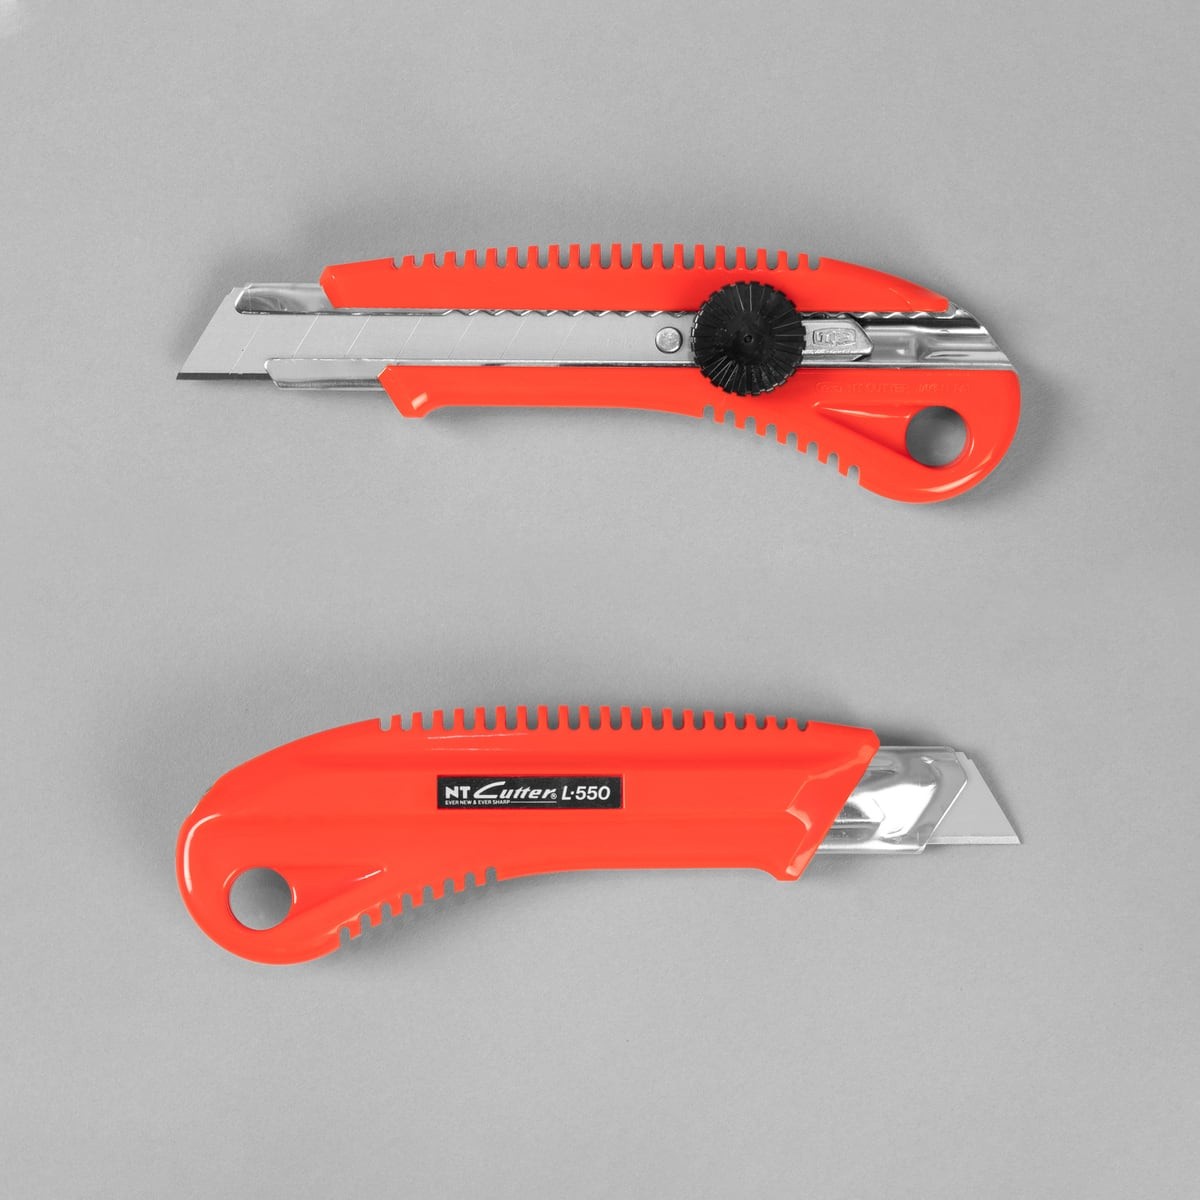 NT cutter knife